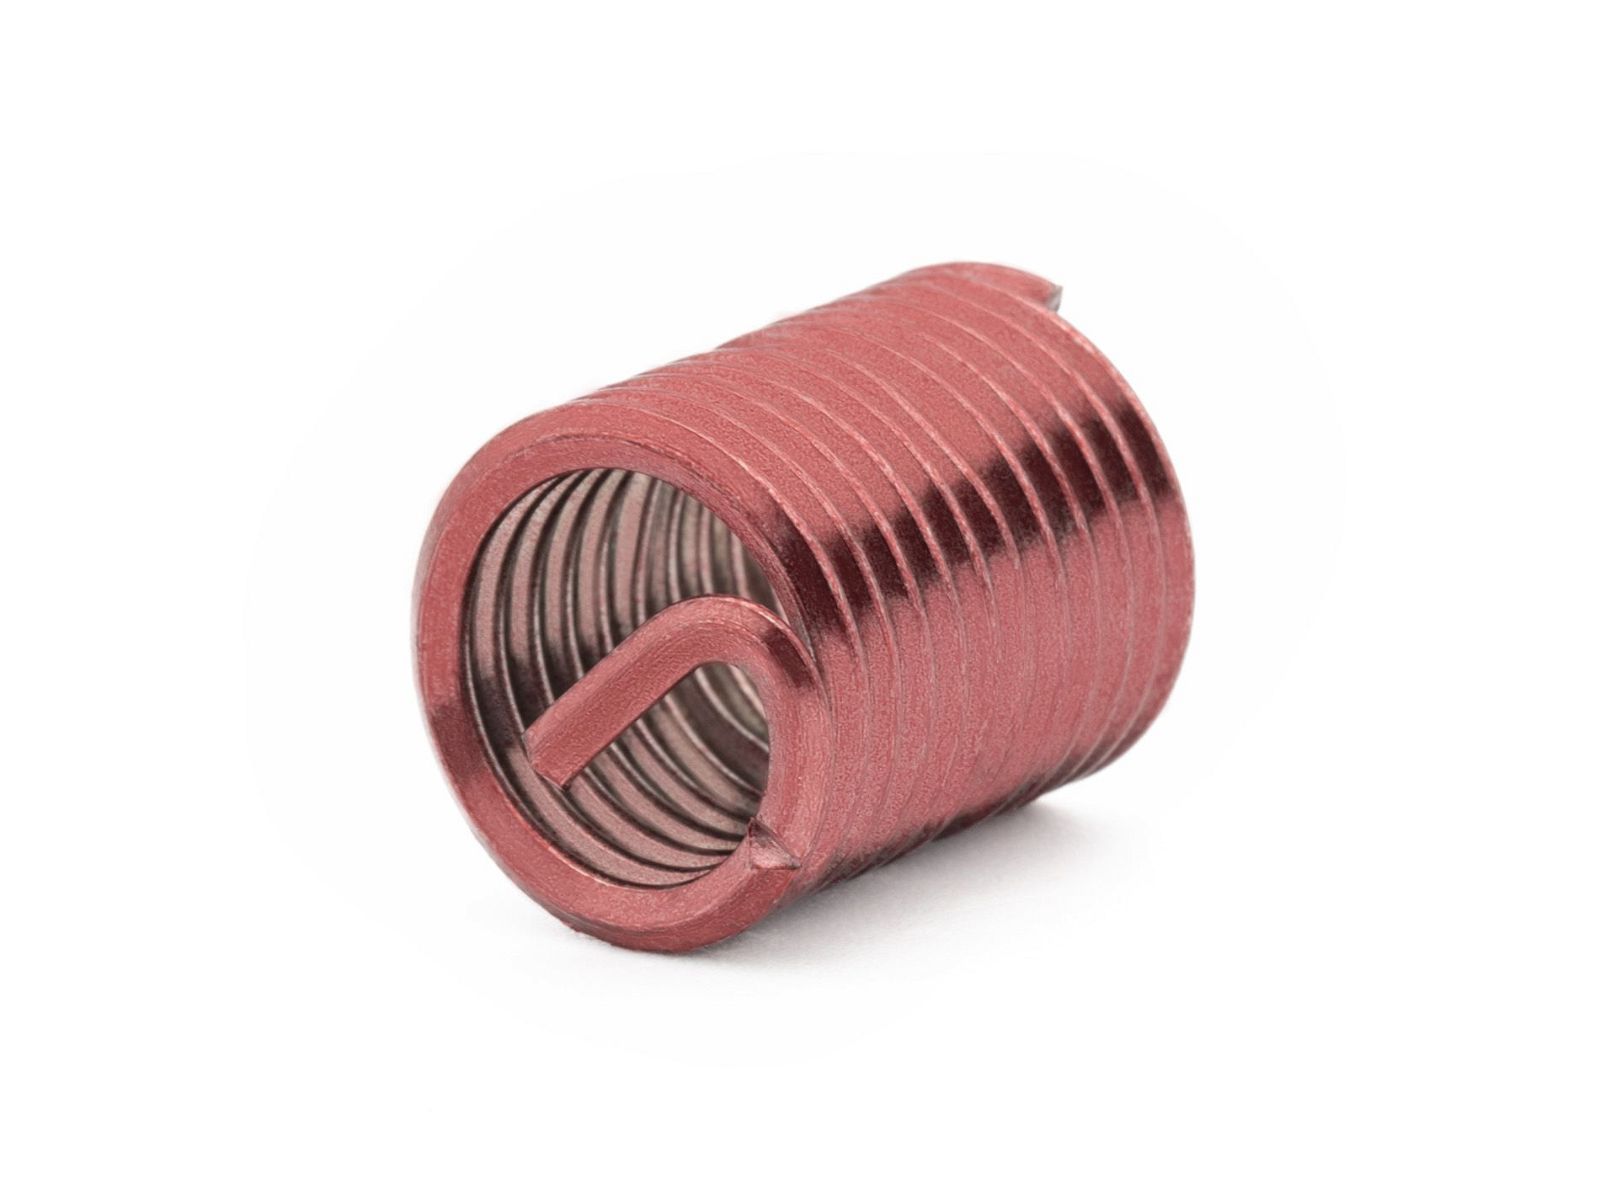 BaerCoil Wire Thread Inserts BA 4 - 2.0 D (7.2 mm) - screw grip (screw locking) - 100 pcs.